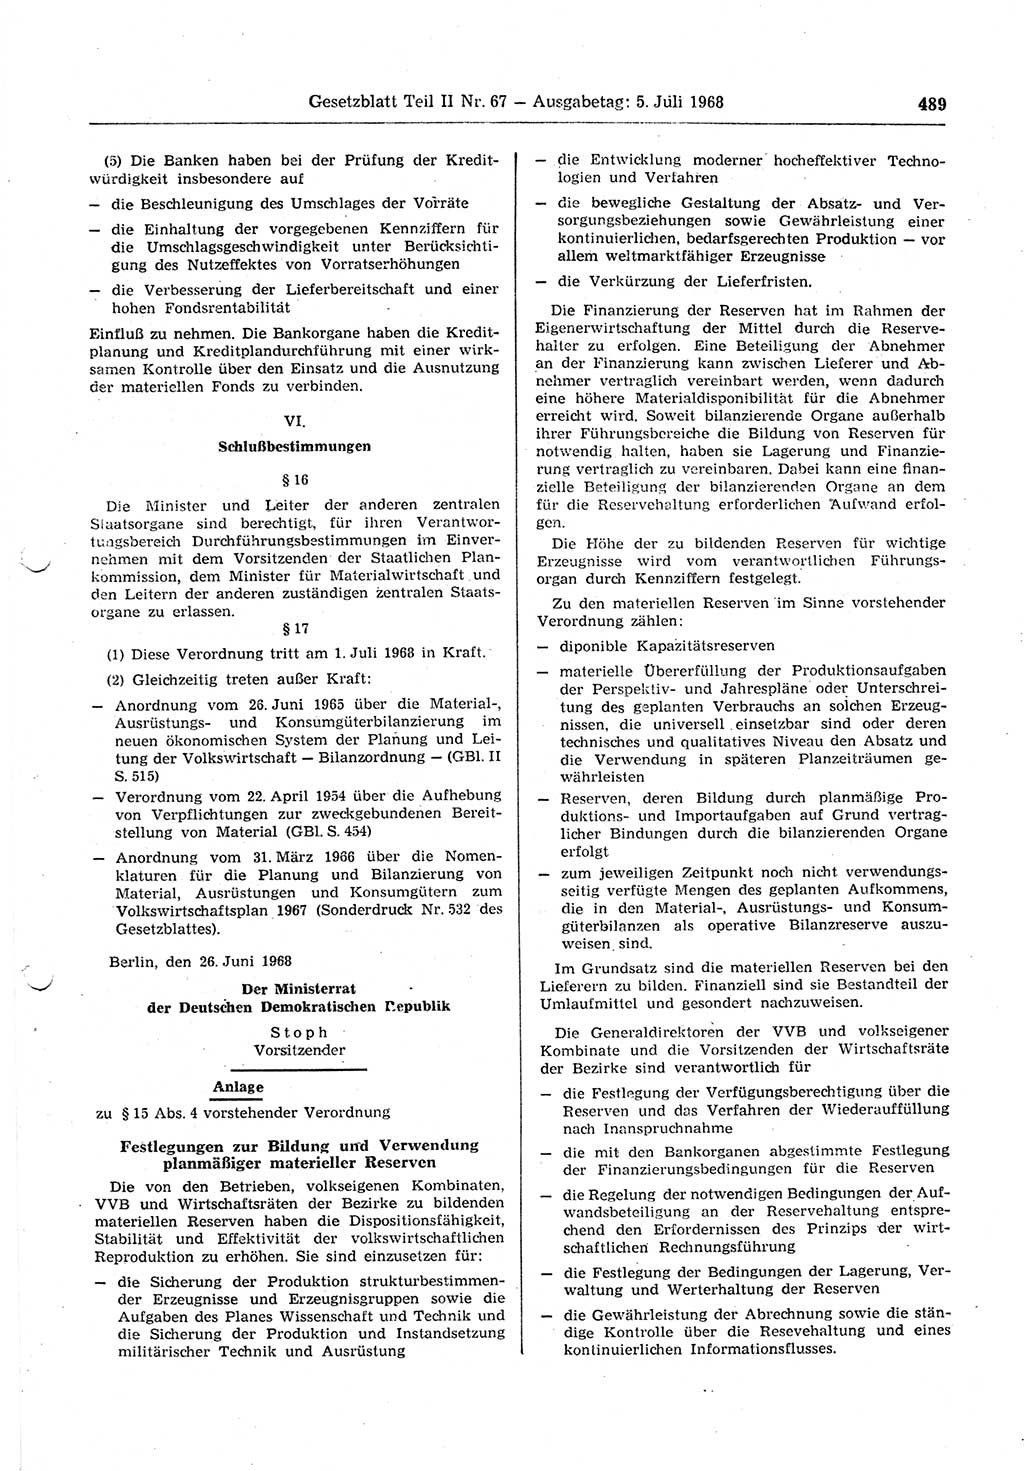 Gesetzblatt (GBl.) der Deutschen Demokratischen Republik (DDR) Teil ⅠⅠ 1968, Seite 489 (GBl. DDR ⅠⅠ 1968, S. 489)